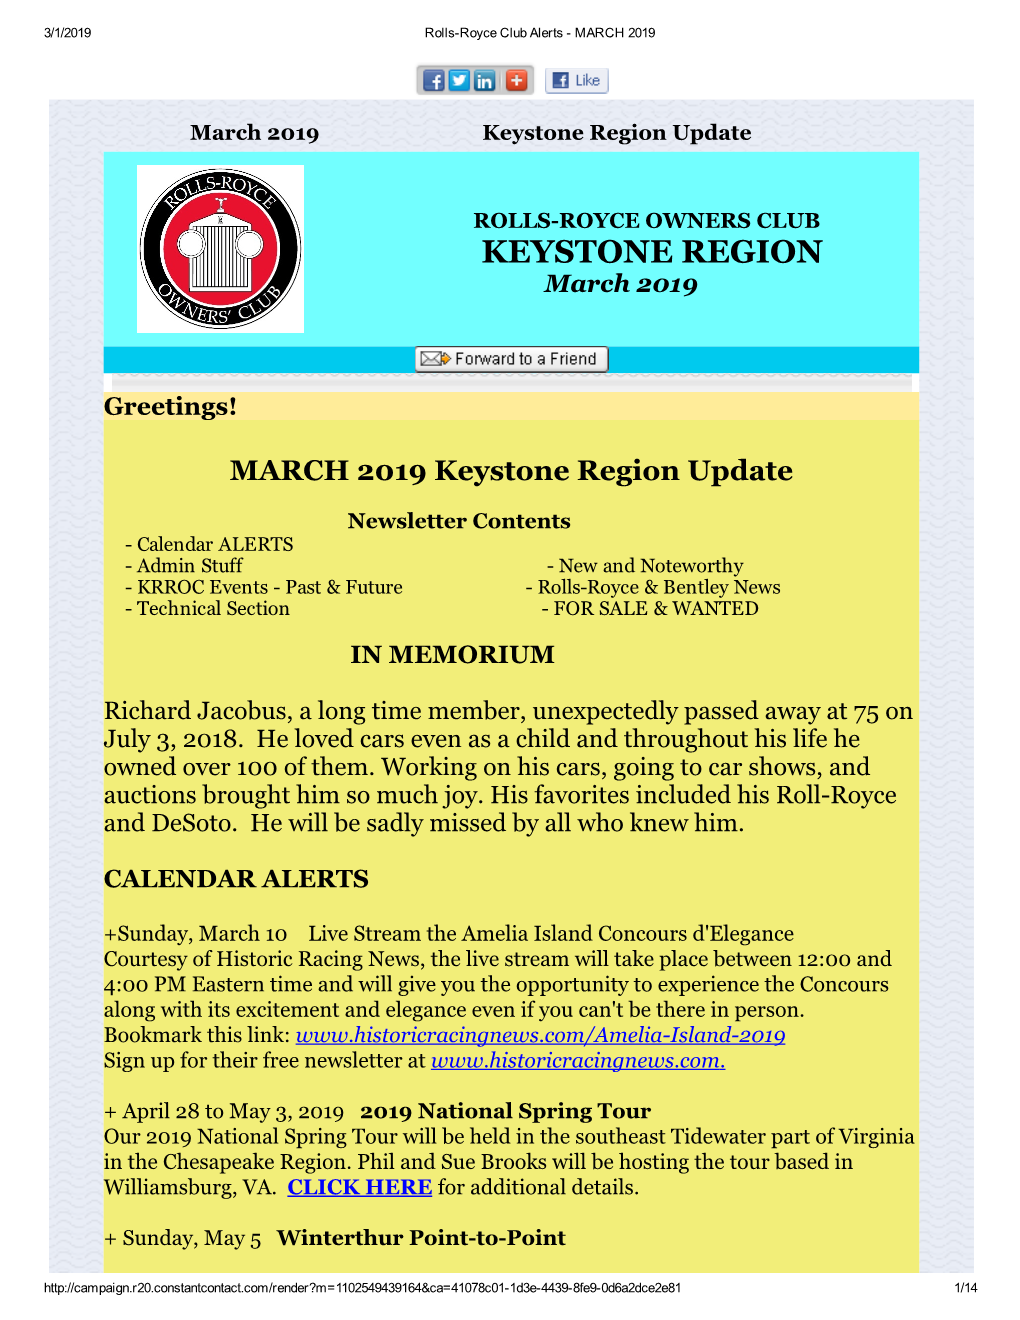 Keystone Region Update